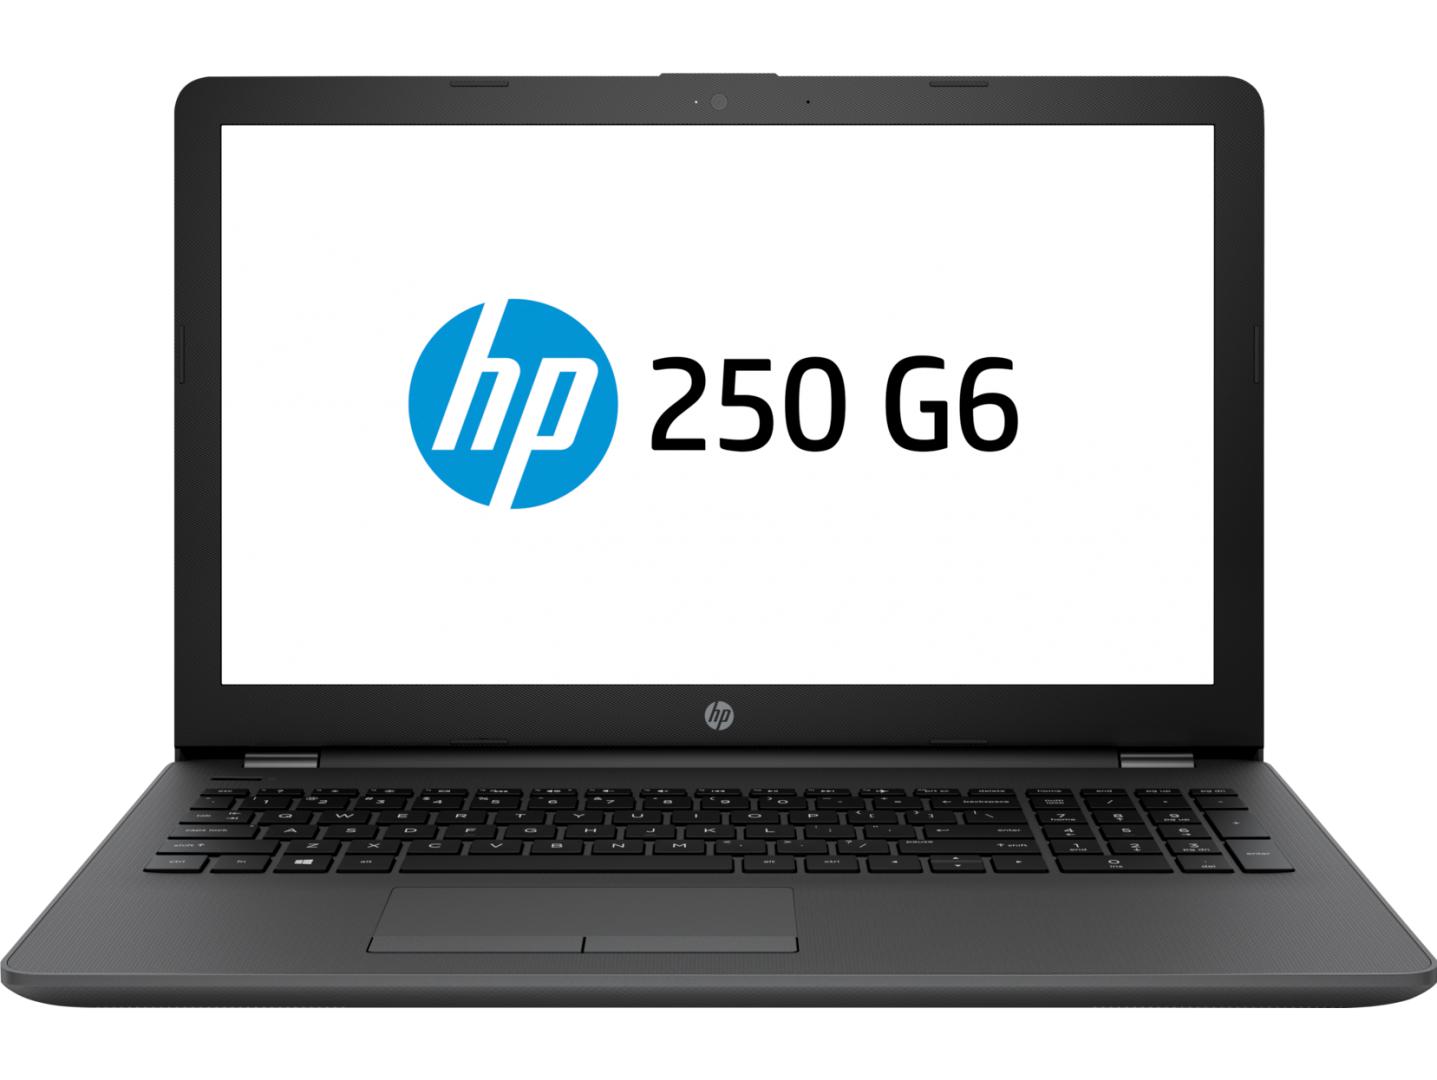 Laptop HP 250 G6, 15.6" LED FHD, Intel Core i5-7200U, AMD Radeon 520 2GB DDR3, RAM 8GB DDR4, SSD 256GB, Windows 10 Pro 64bit